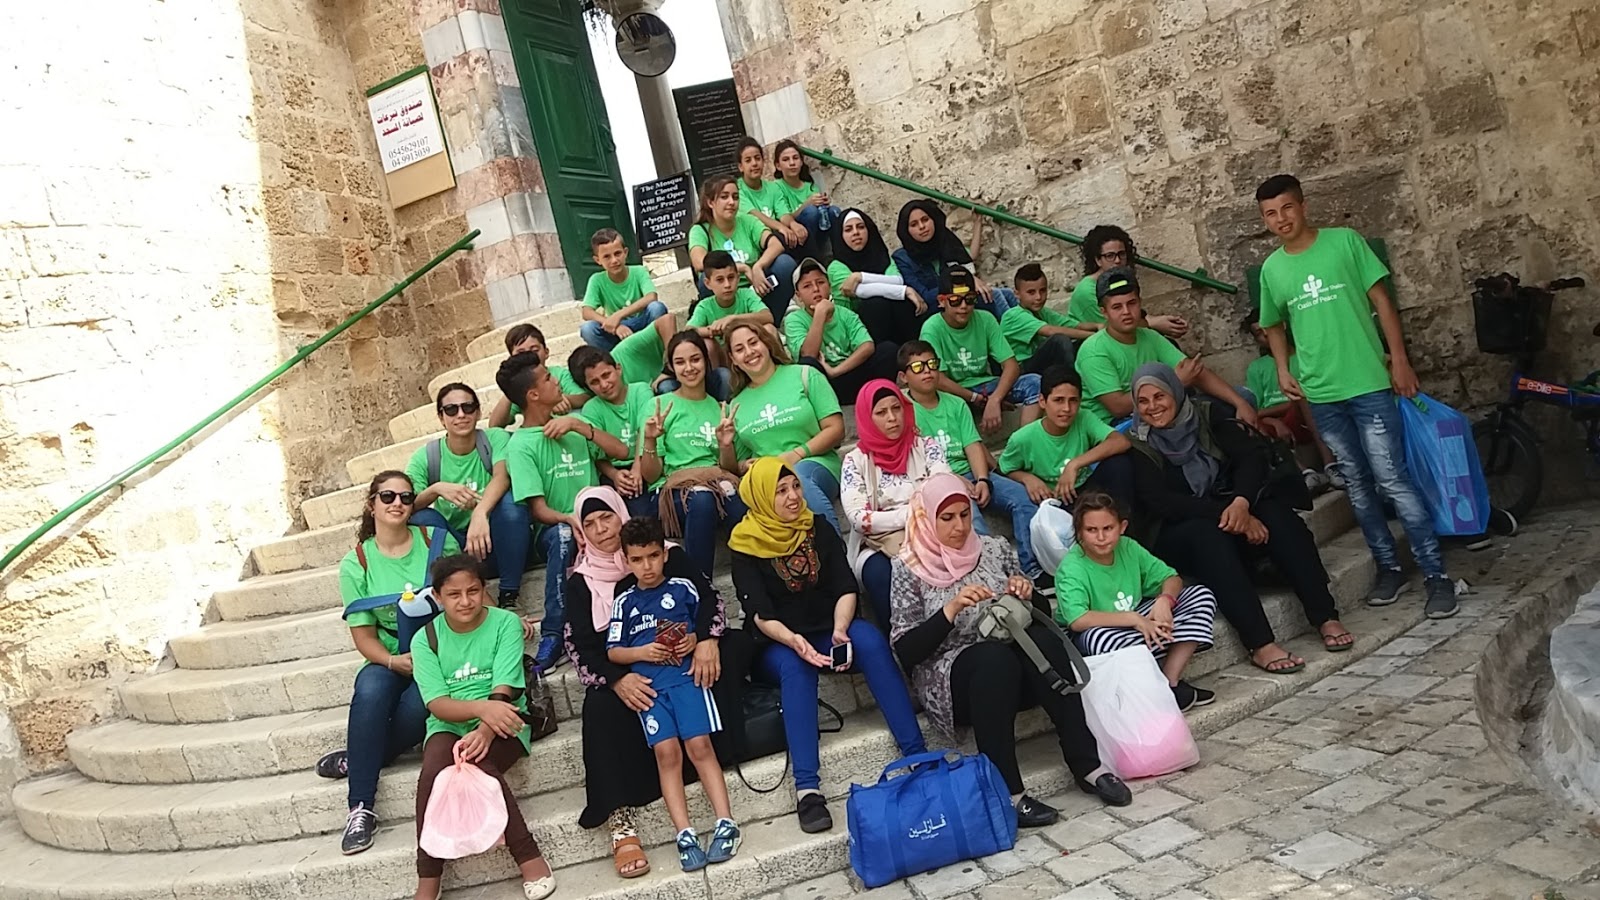 Sommerfreizeit 2017 für palästinensische Kinder